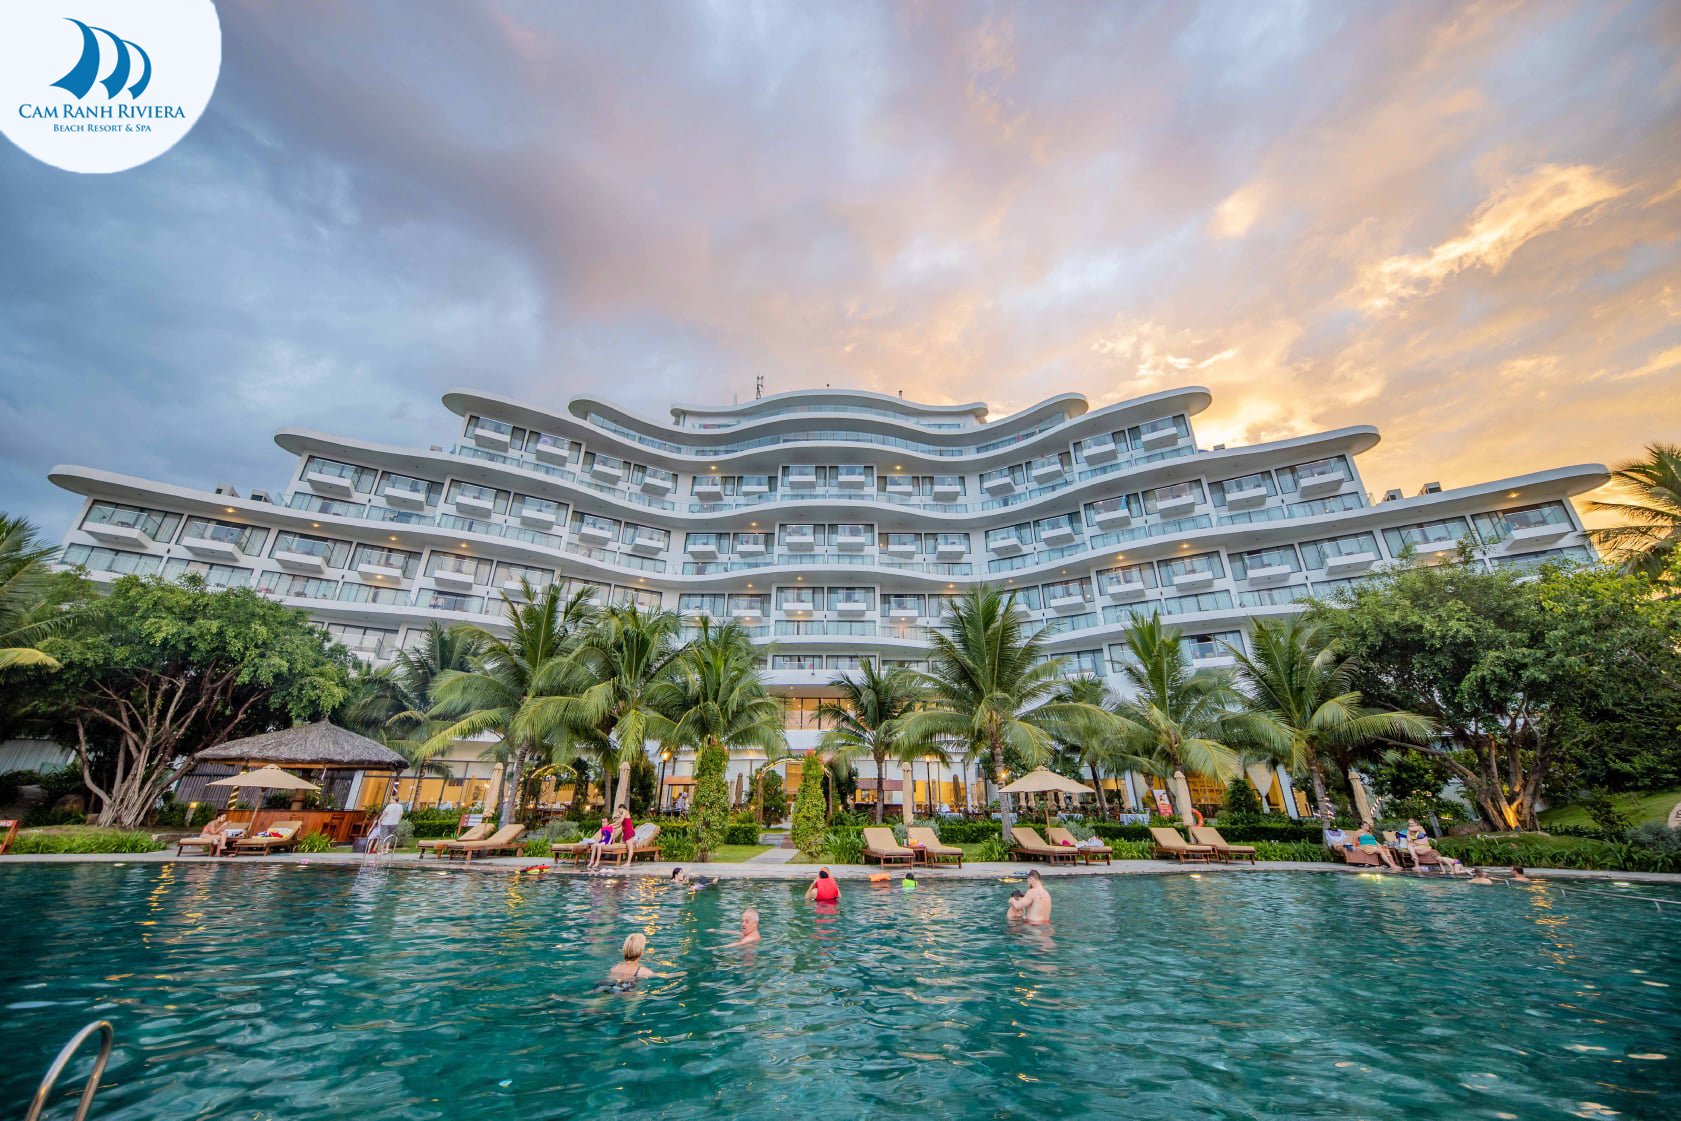 Bể bơi cực đẹp tại Cam Ranh Riviera Beach Resort & Spa.